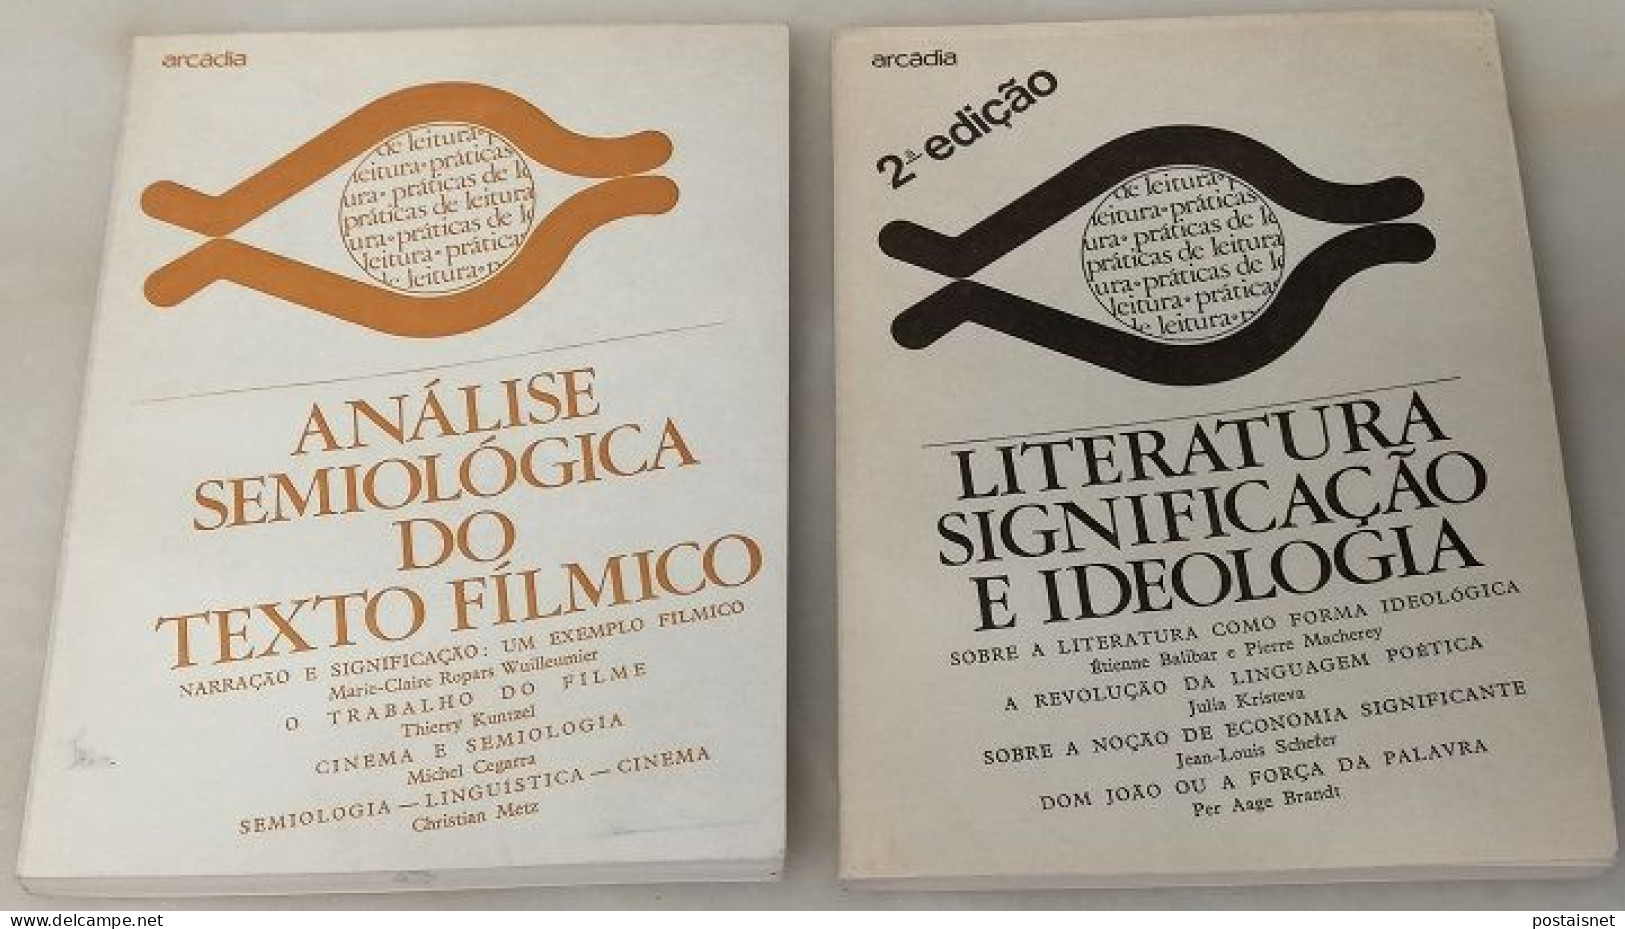 Análise Semiológica Do Texto Fílmico E Literatura Significação E Ideologia - Arcádia - Kultur